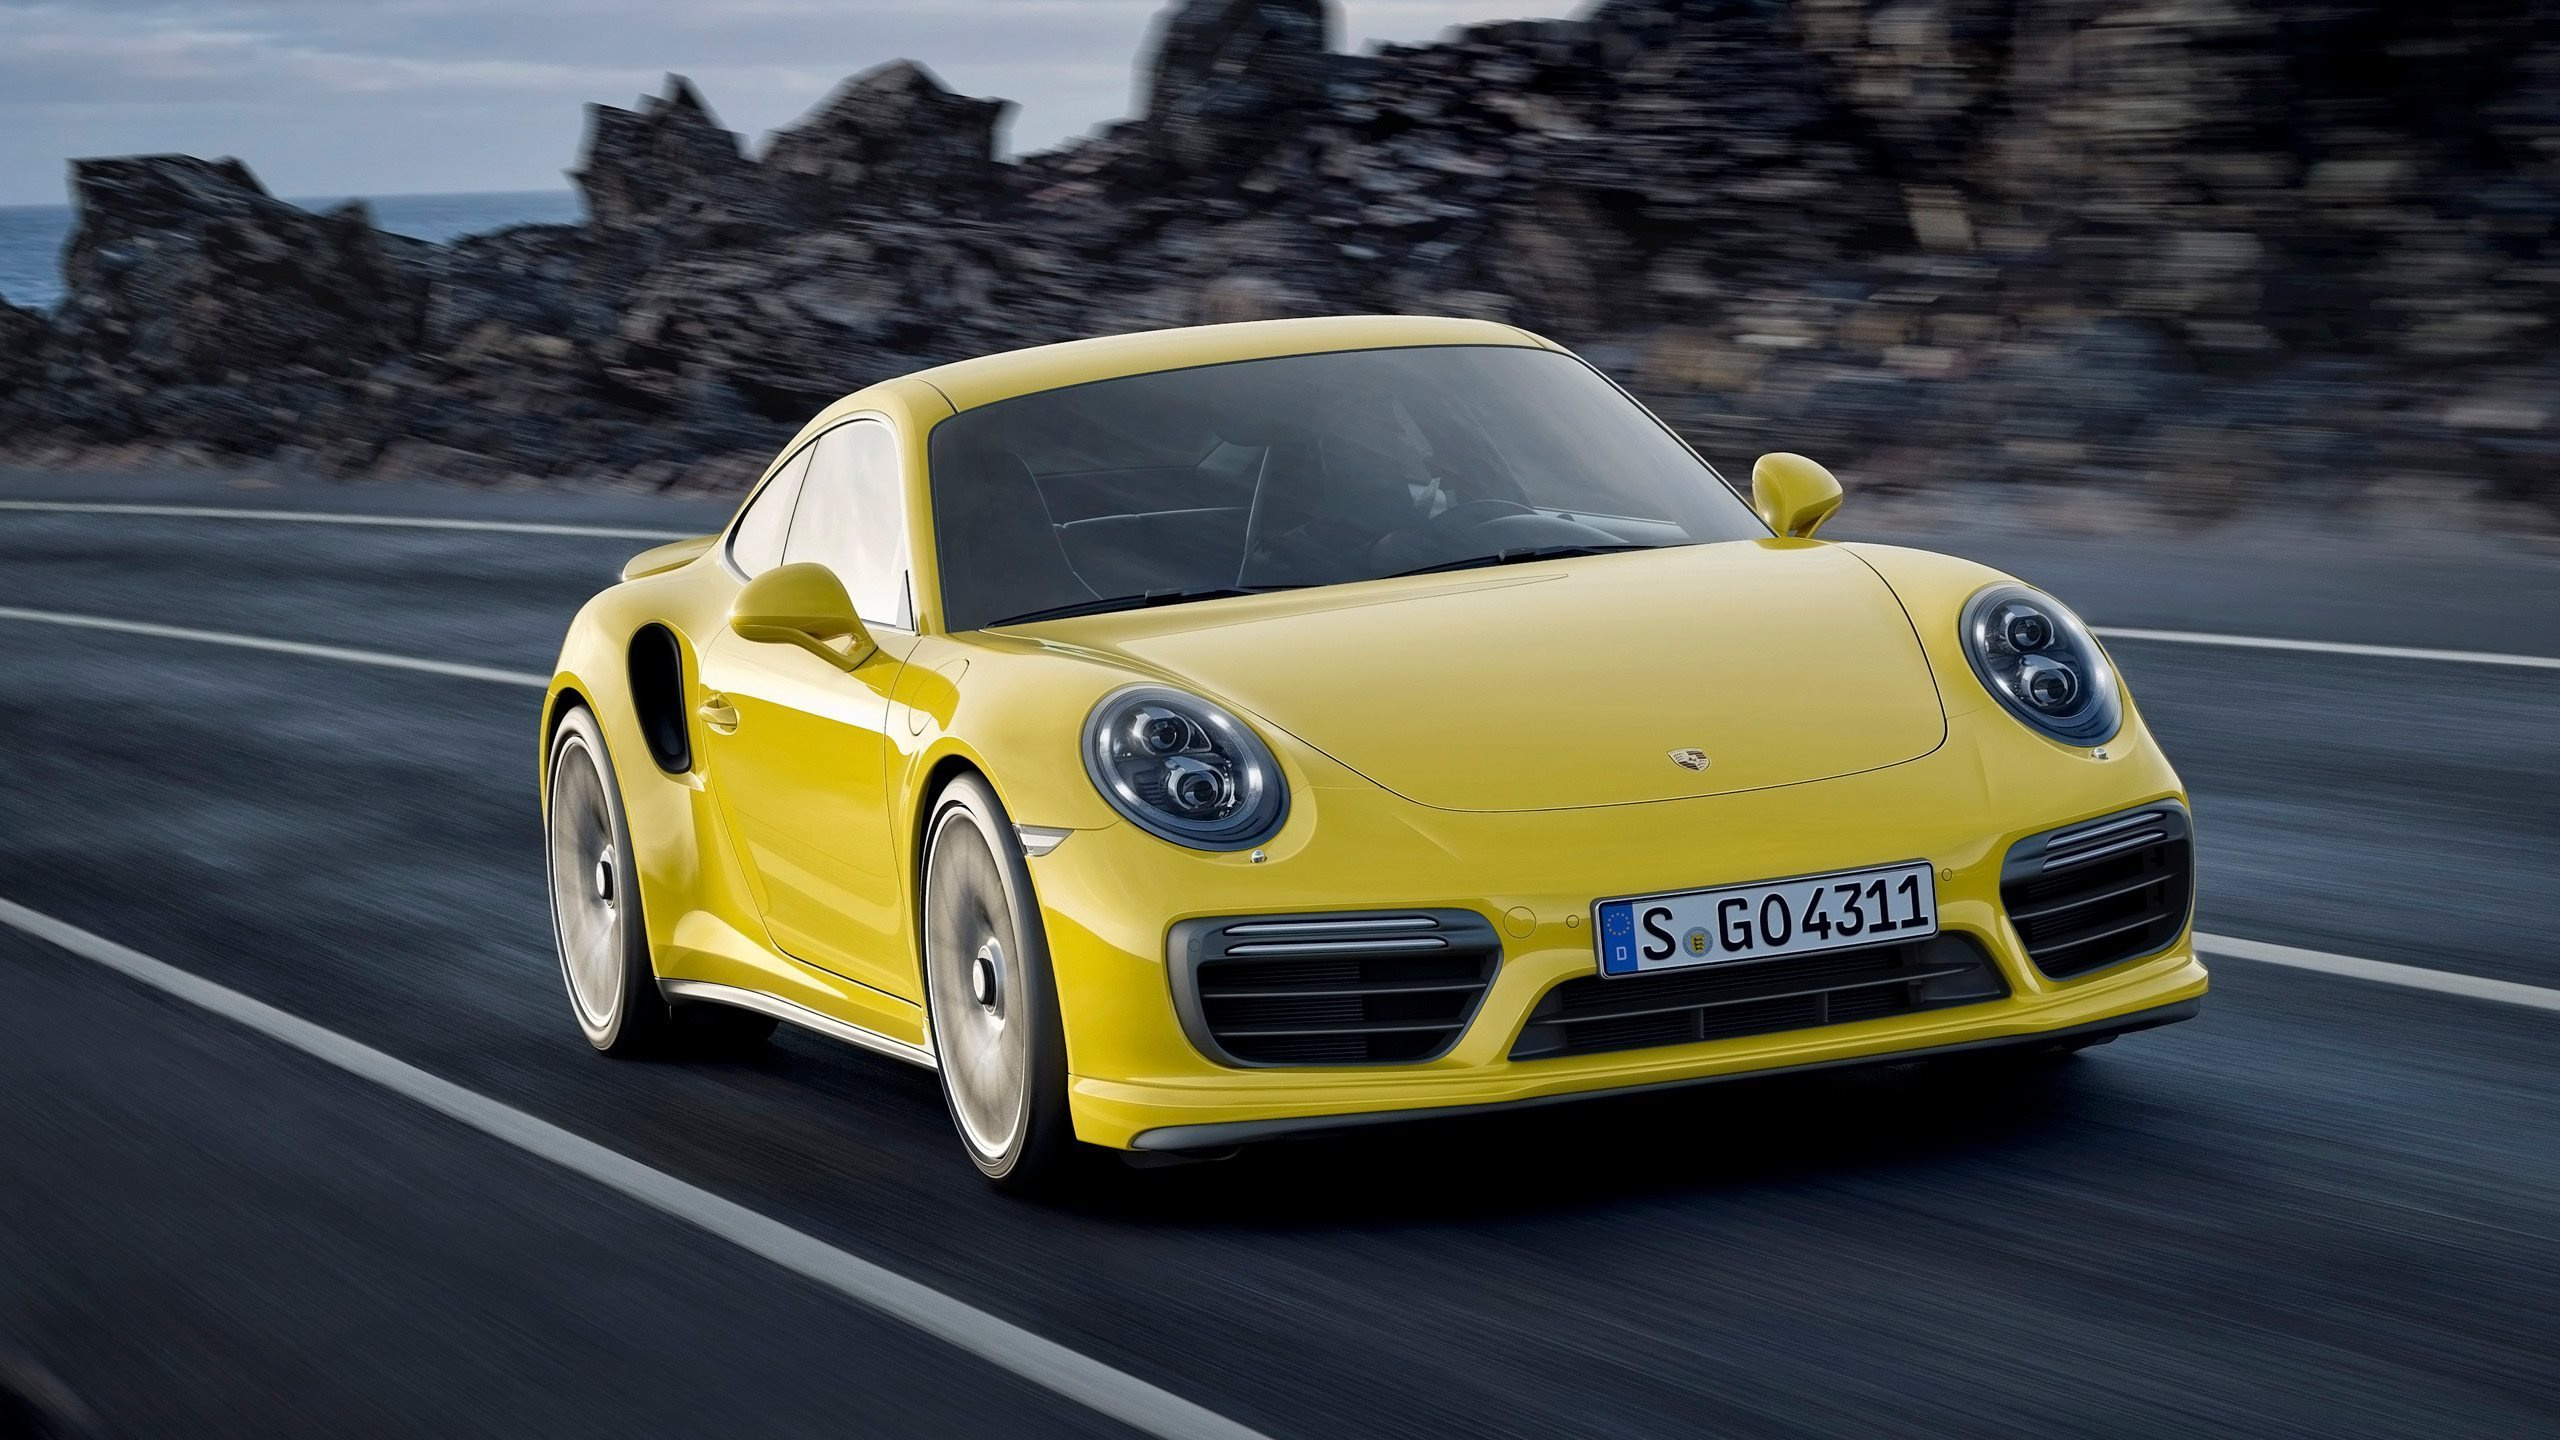 Gelber Porsche 911 Tagsüber Unterwegs. Wallpaper in 2560x1440 Resolution